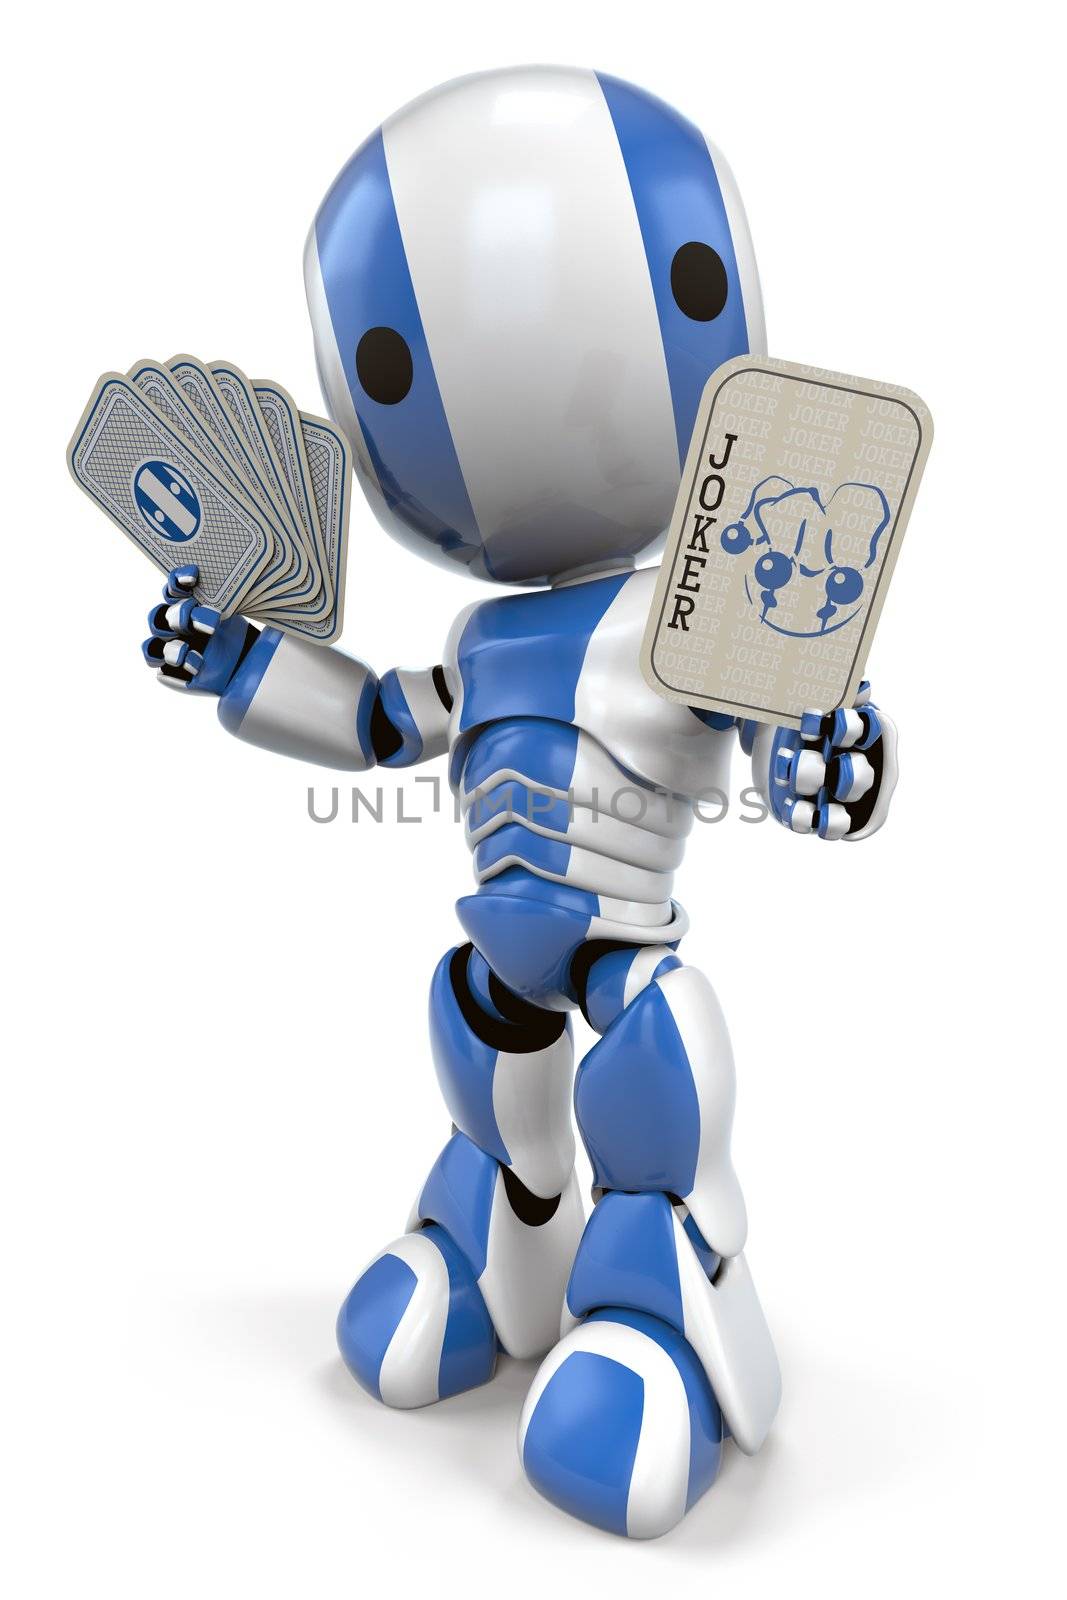 Blue Robot Holding Joker Card by LeoBlanchette